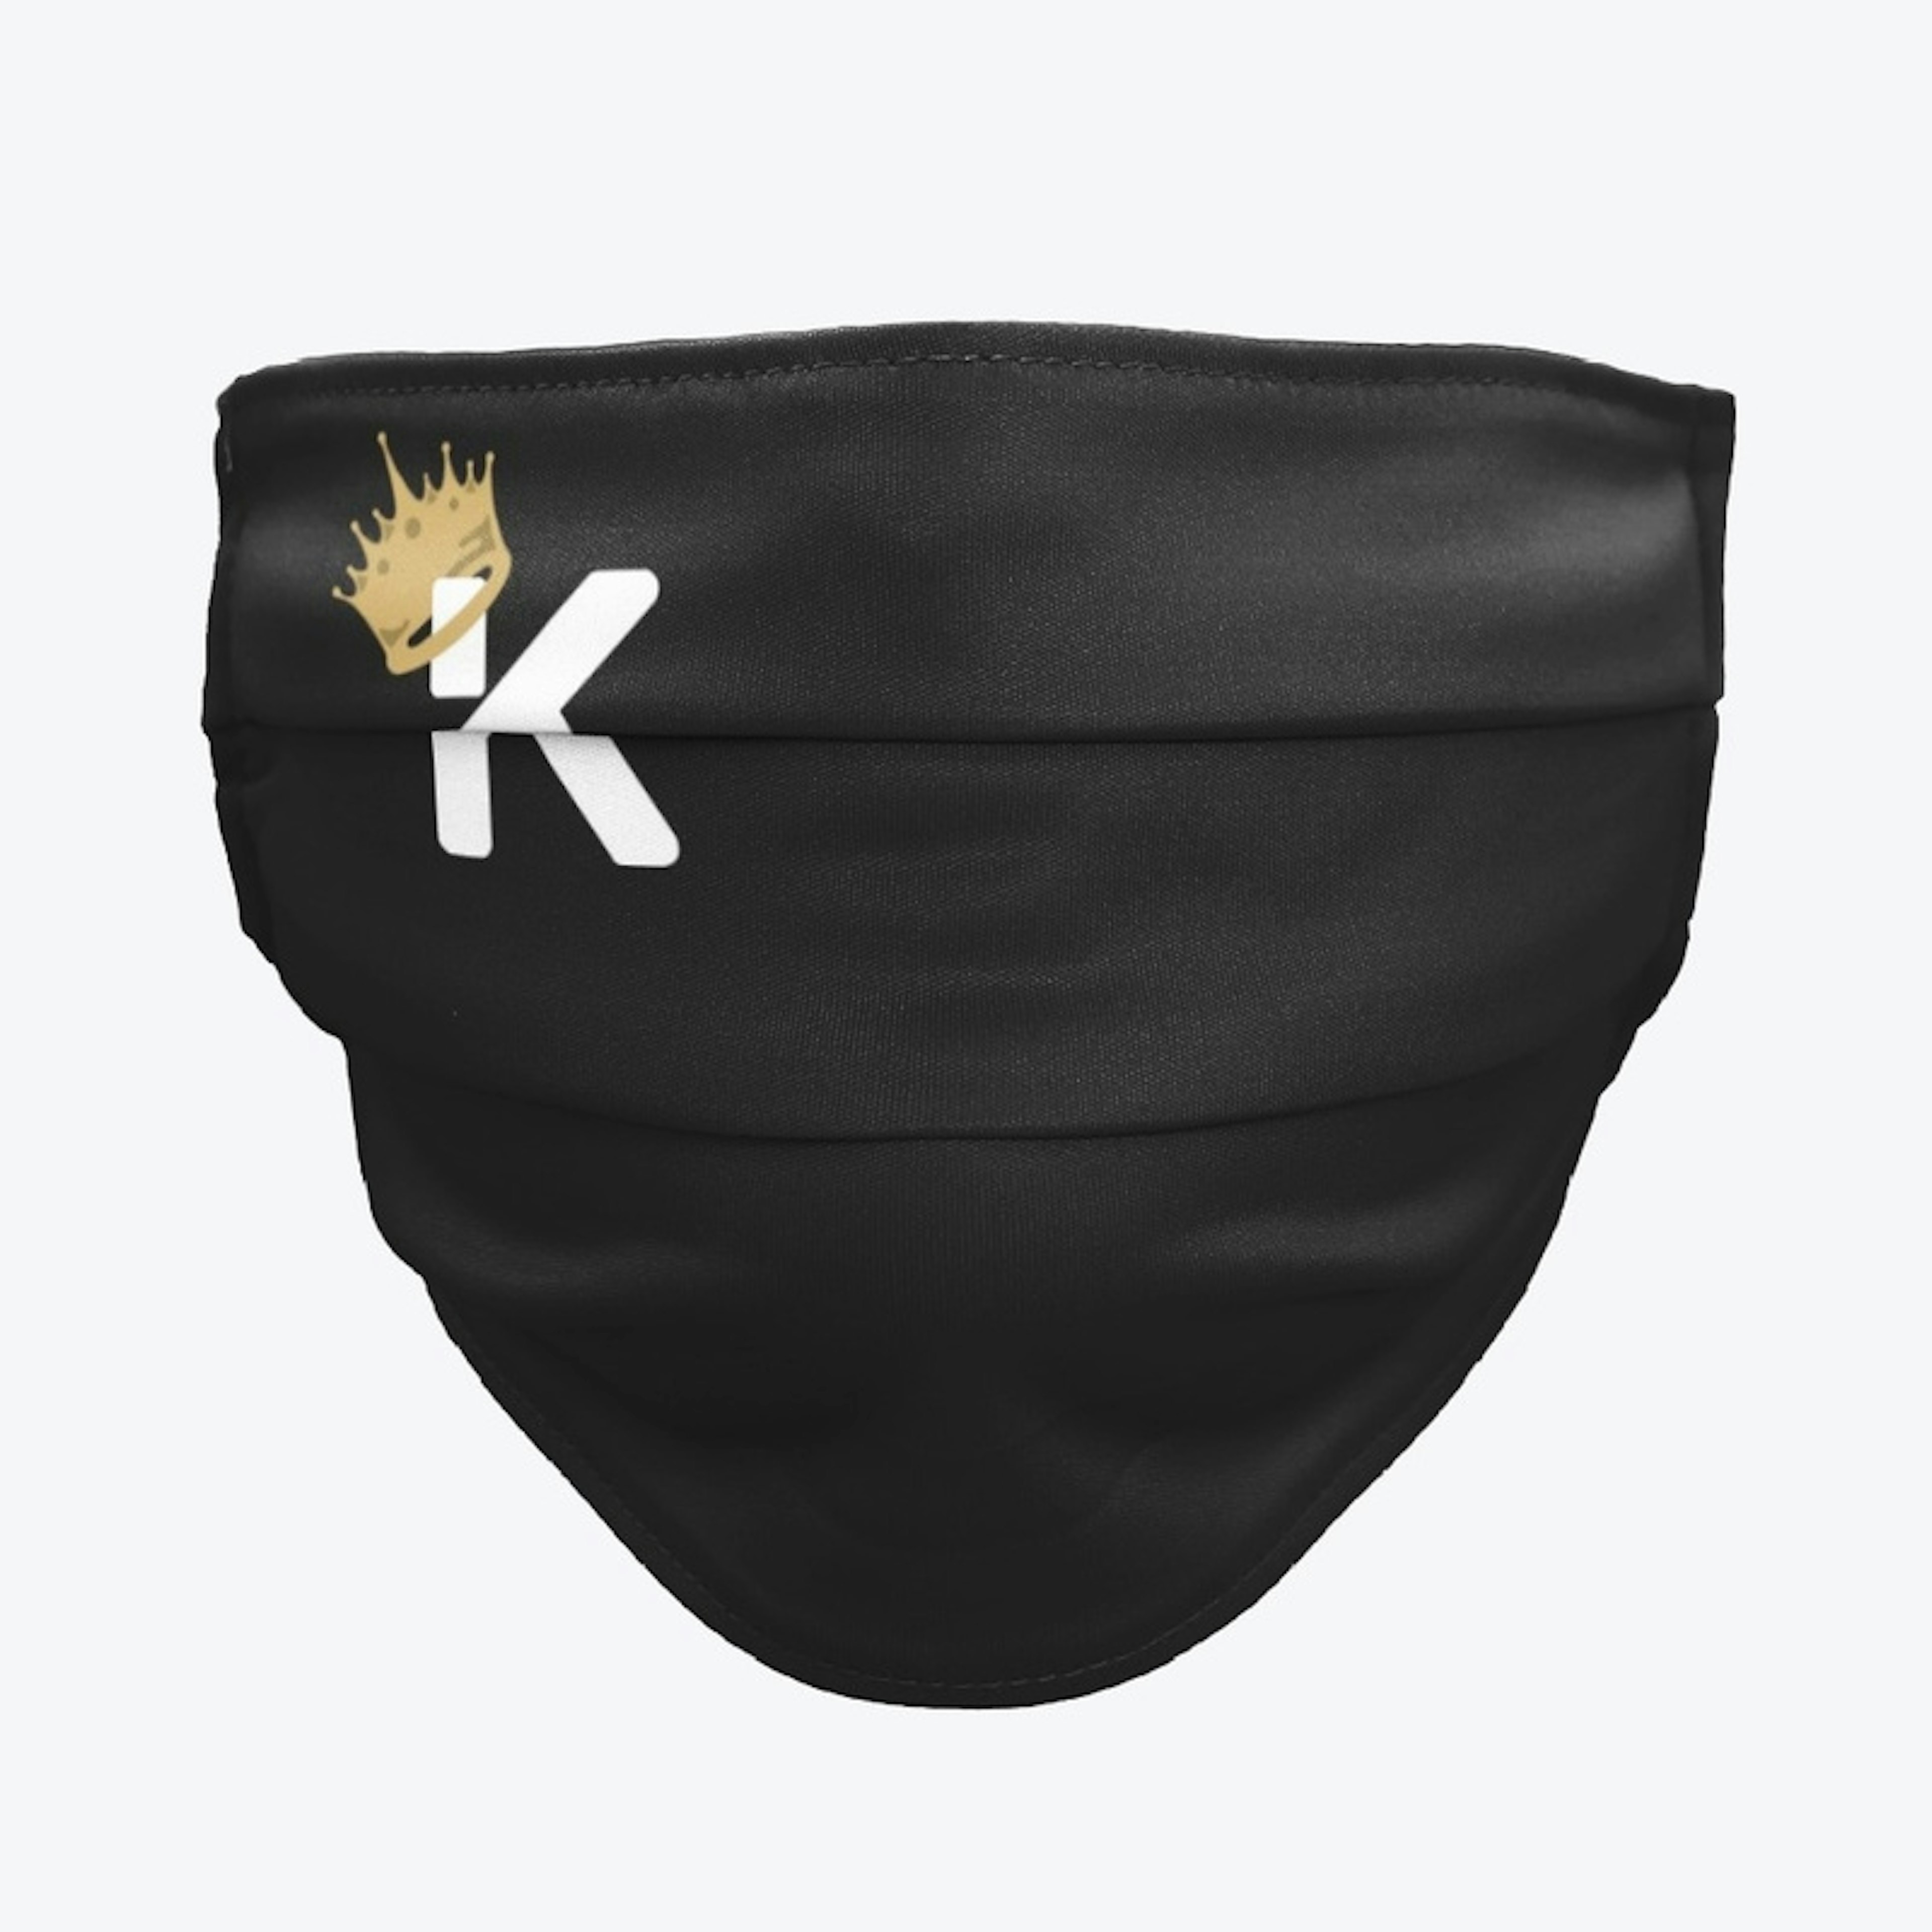 KF Mask